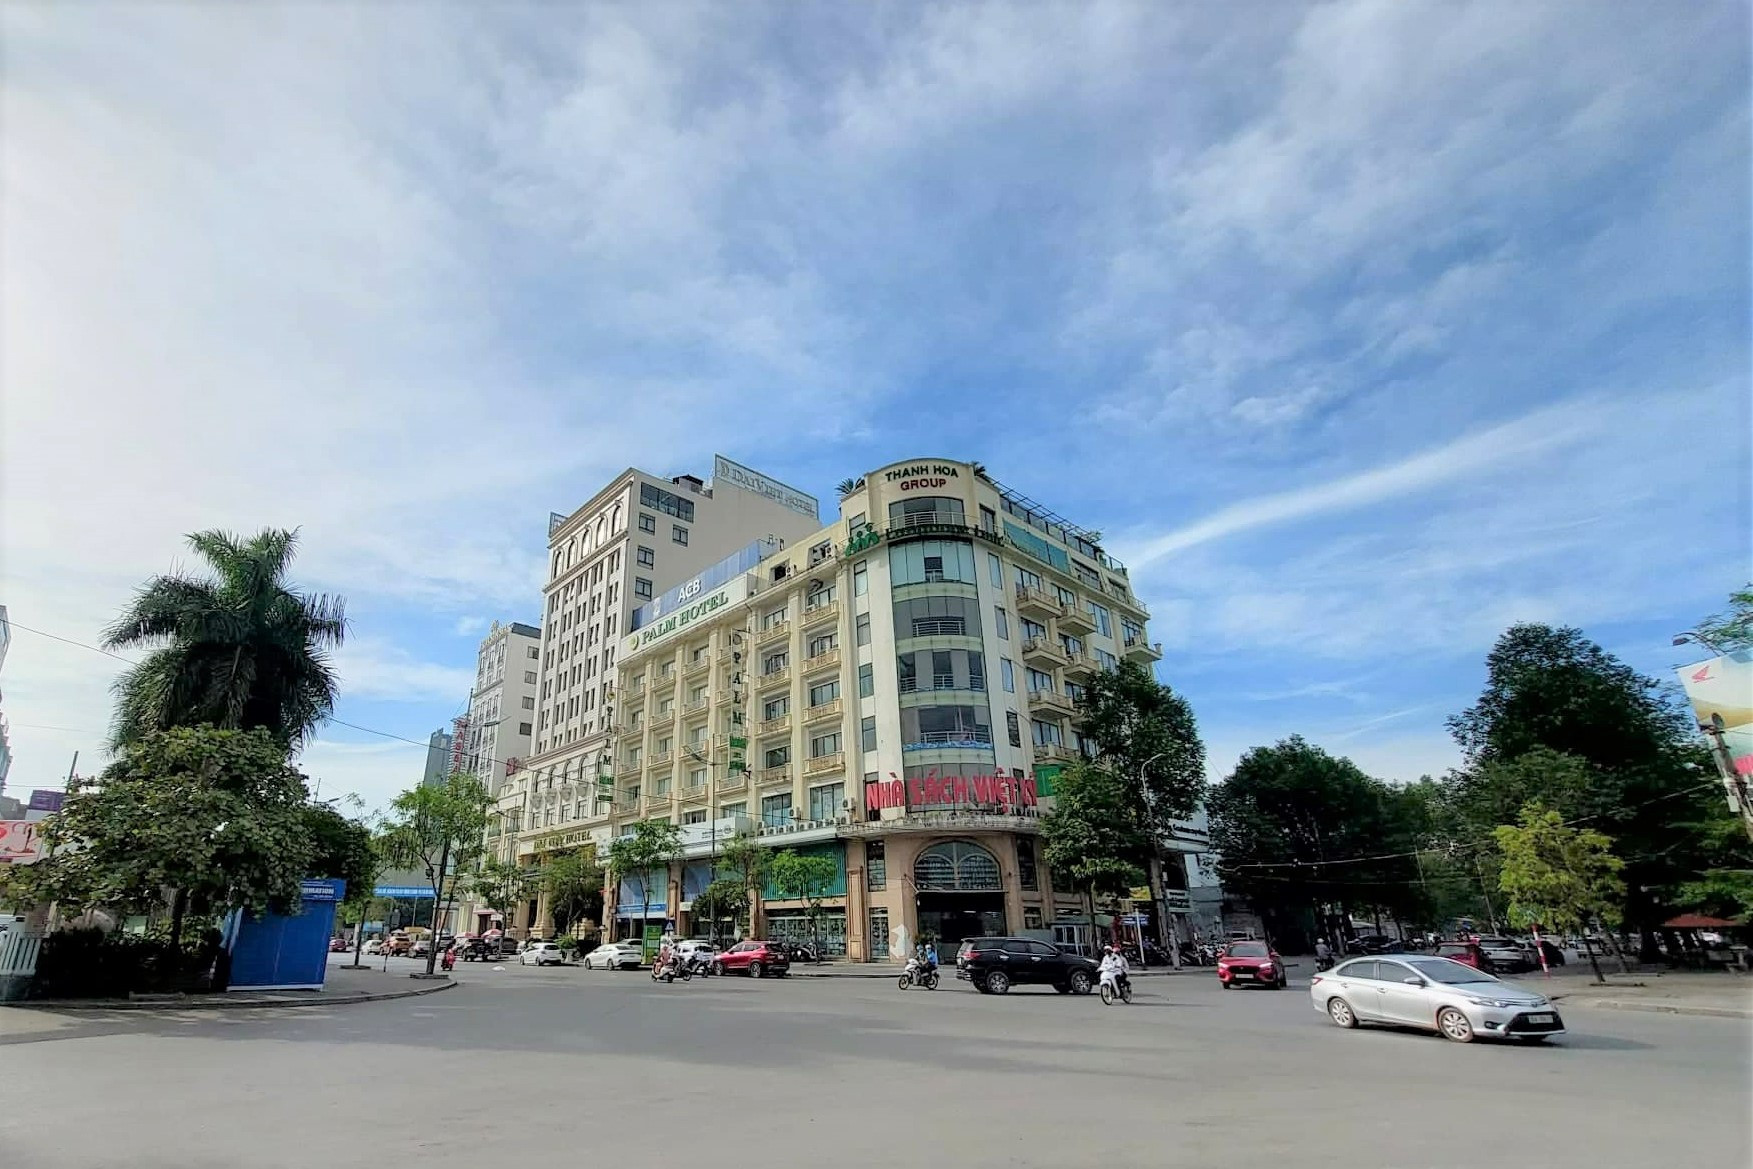 Khởi tố vụ án dự án Hạc Thành Tower ở Thanh Hóa bất ngờ đưa ra khỏi danh sách thanh tra